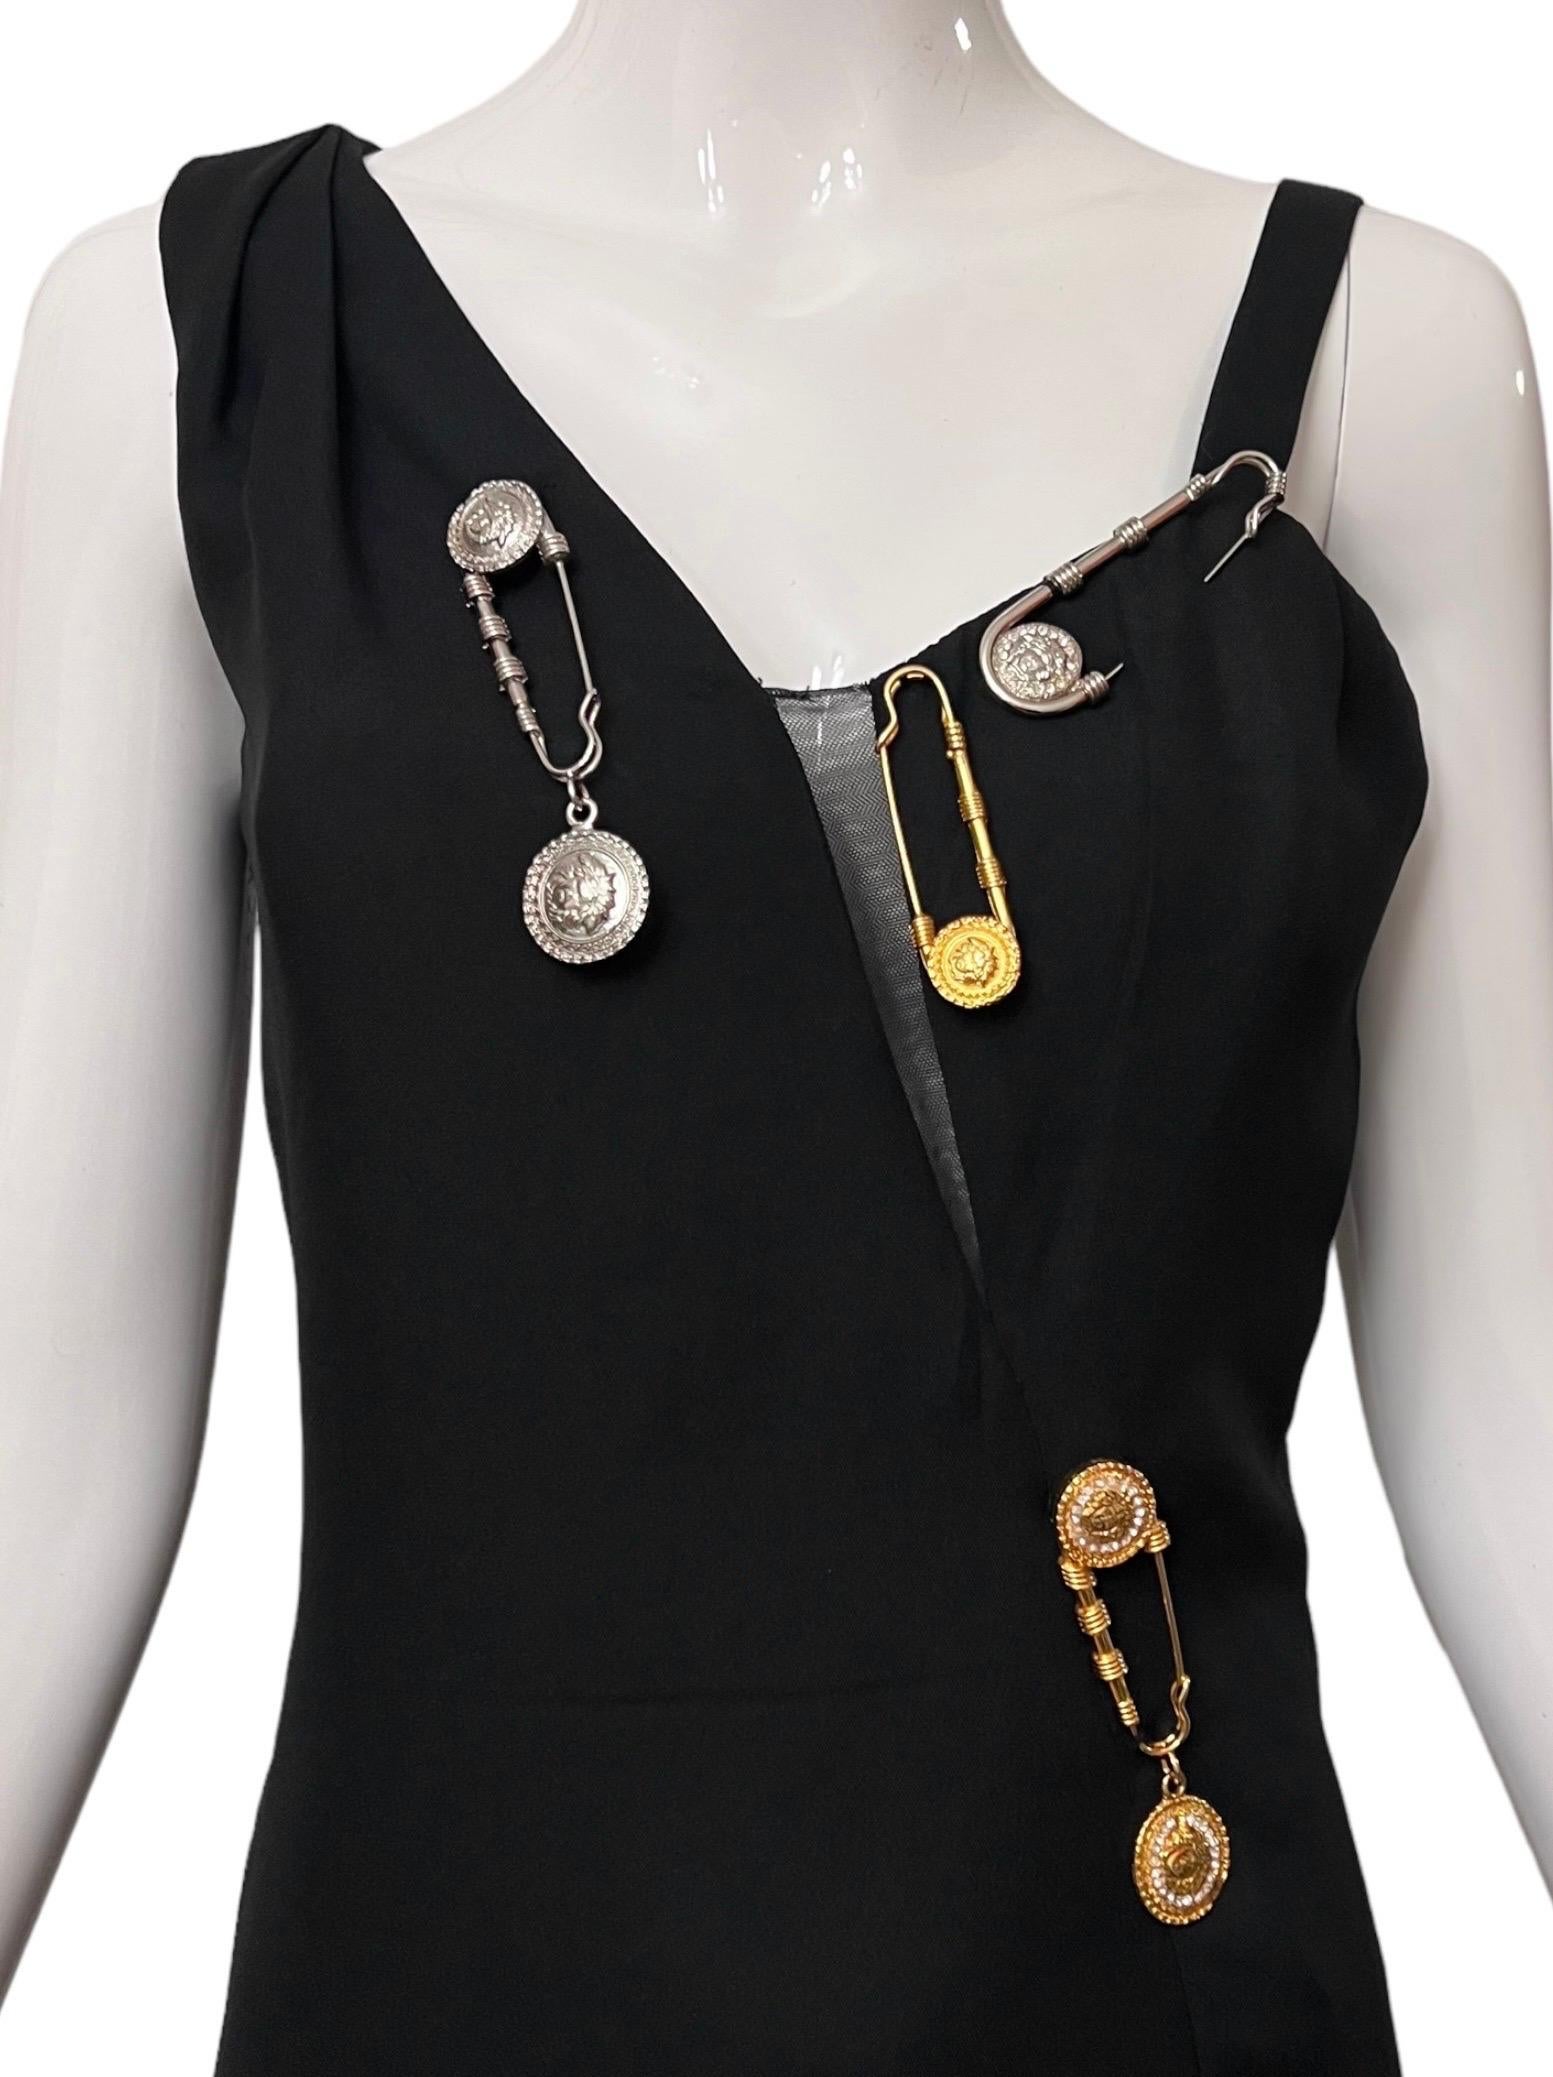 Superbe mini robe vintage noire à épingles à nourrice de Gianni Versace, issue de la collection emblématique printemps-été 1994 d'inspiration punk.
Le corsage de la robe est orné d'épingles à nourrice en métal Medusa doré et argenté, dont certaines